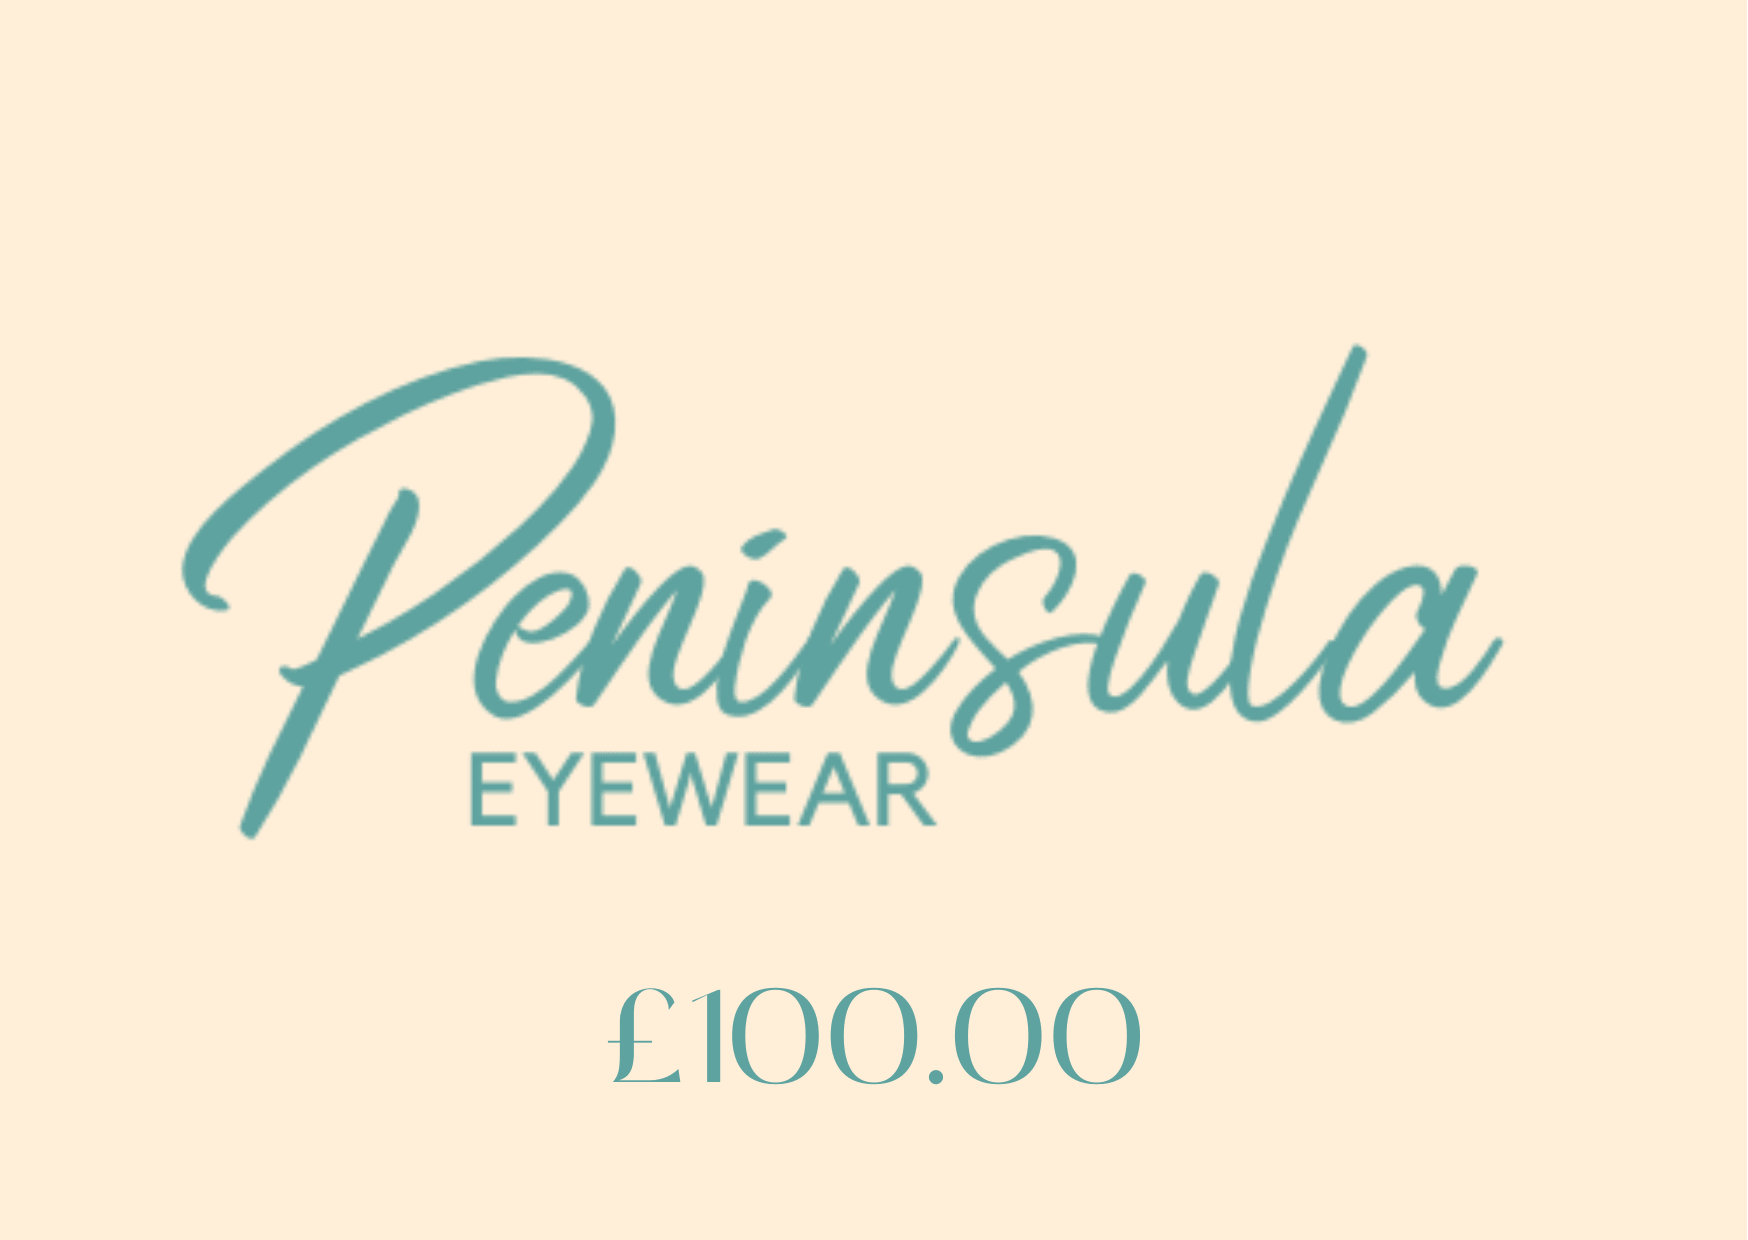 Gift Cards - Peninsula Eyewear